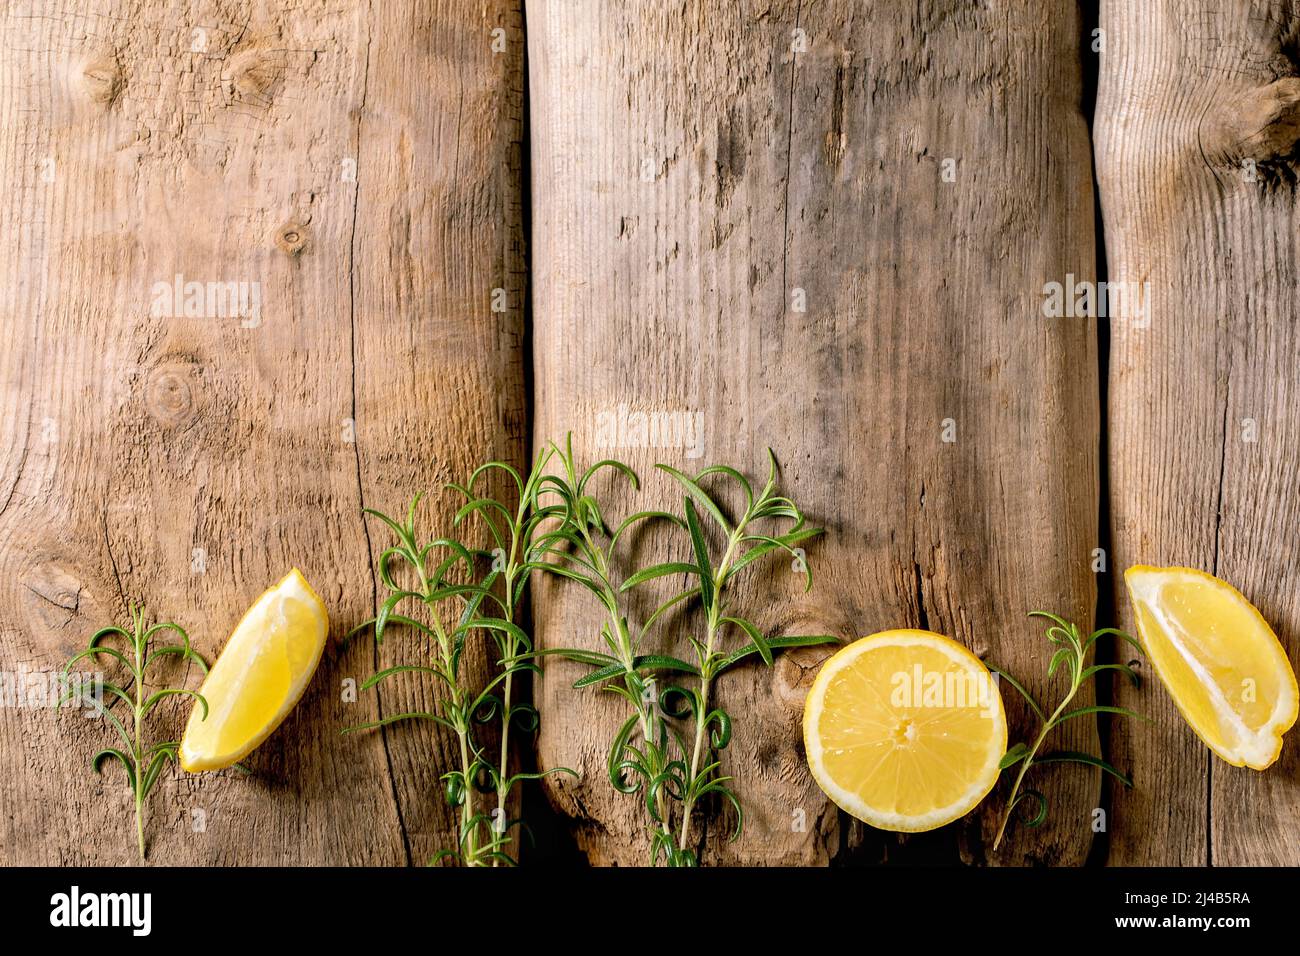 Agrumes et herbes. Des tranches de citron et de romarin frais et biologiques sont rangées sur un vieux fond en bois. Vue de dessus, espace de copie Banque D'Images